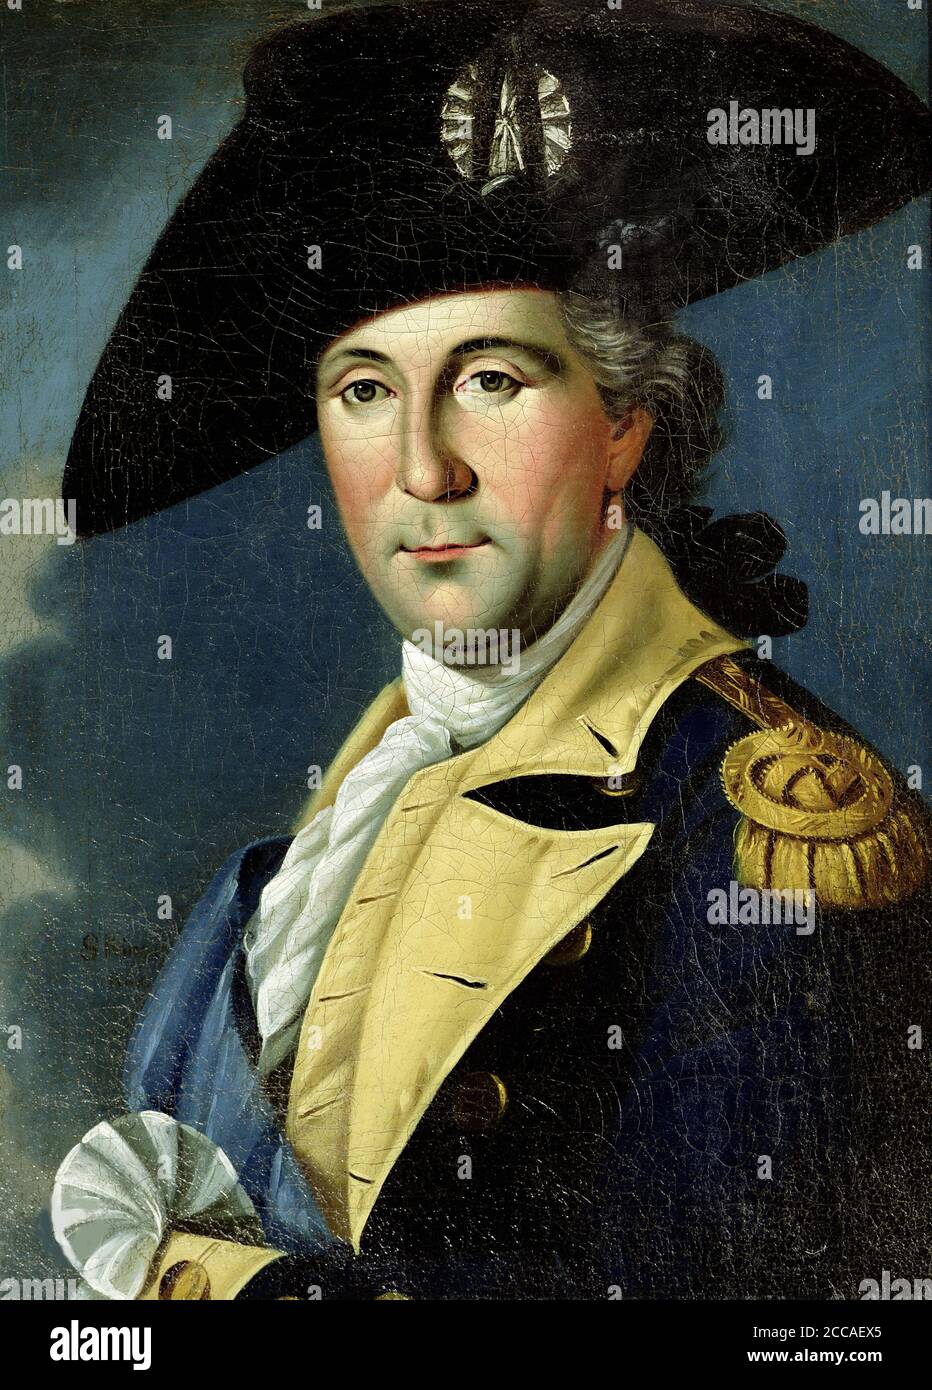 Ritratto di George Washington nell'uniforme di un generale americano. Museo: Château de Blérancourt. Autore: RE SAMUELE. Foto Stock